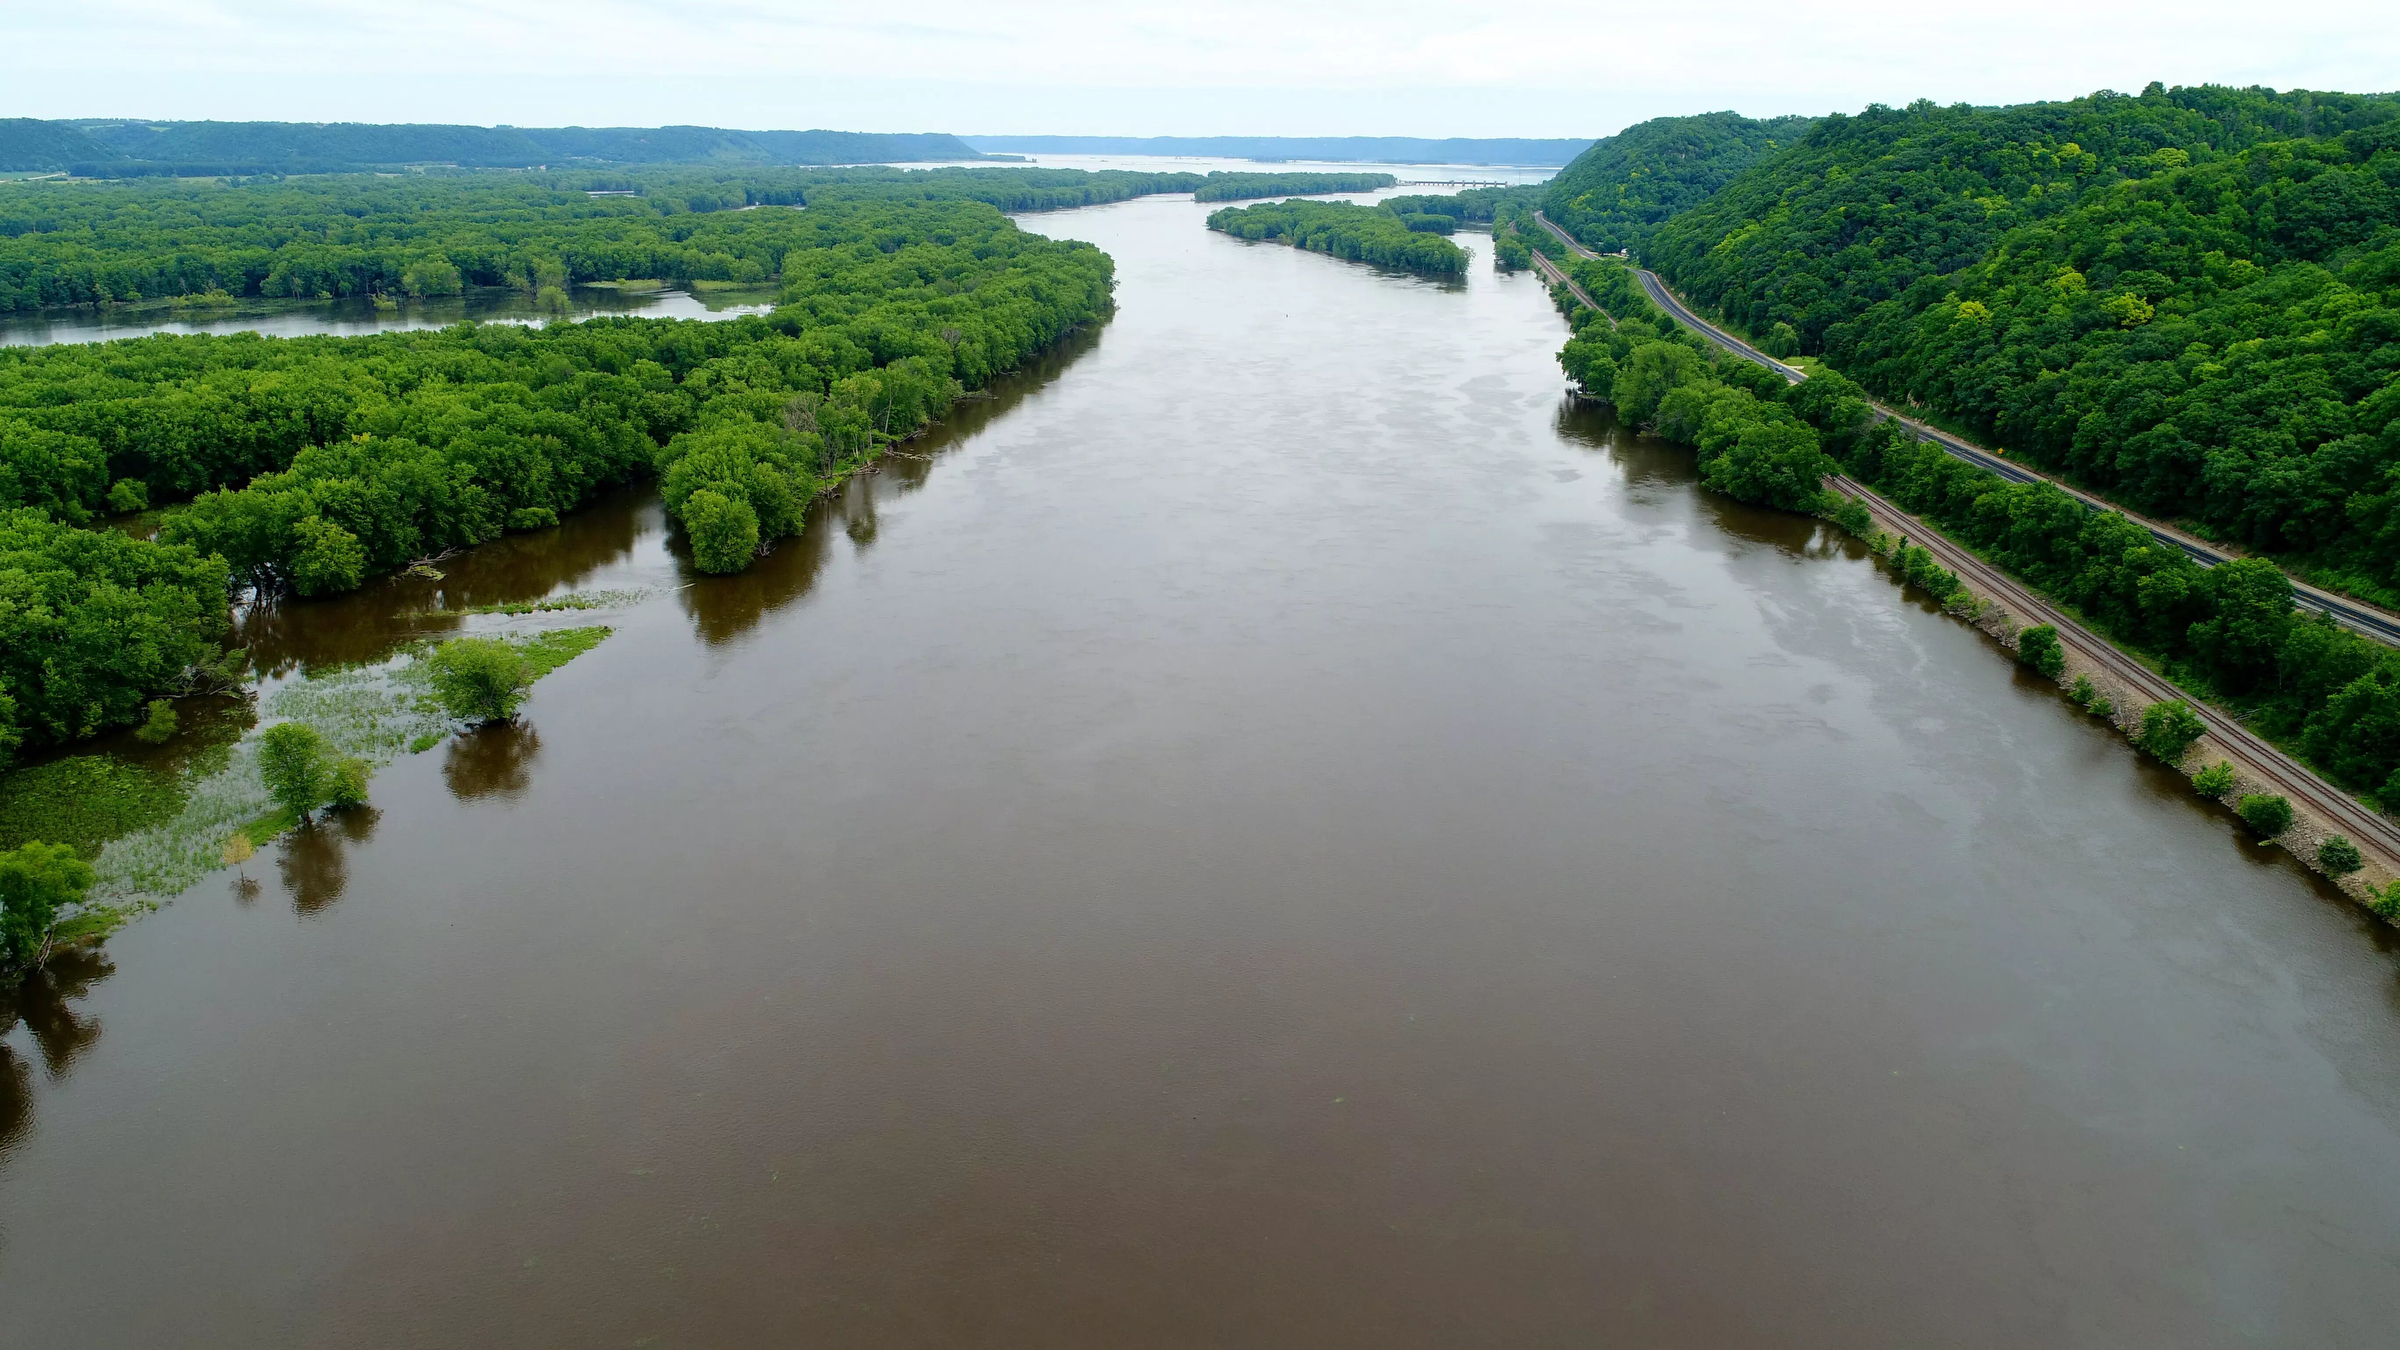 The Mississippi River flows through Prairie du Chien, Wisconsin